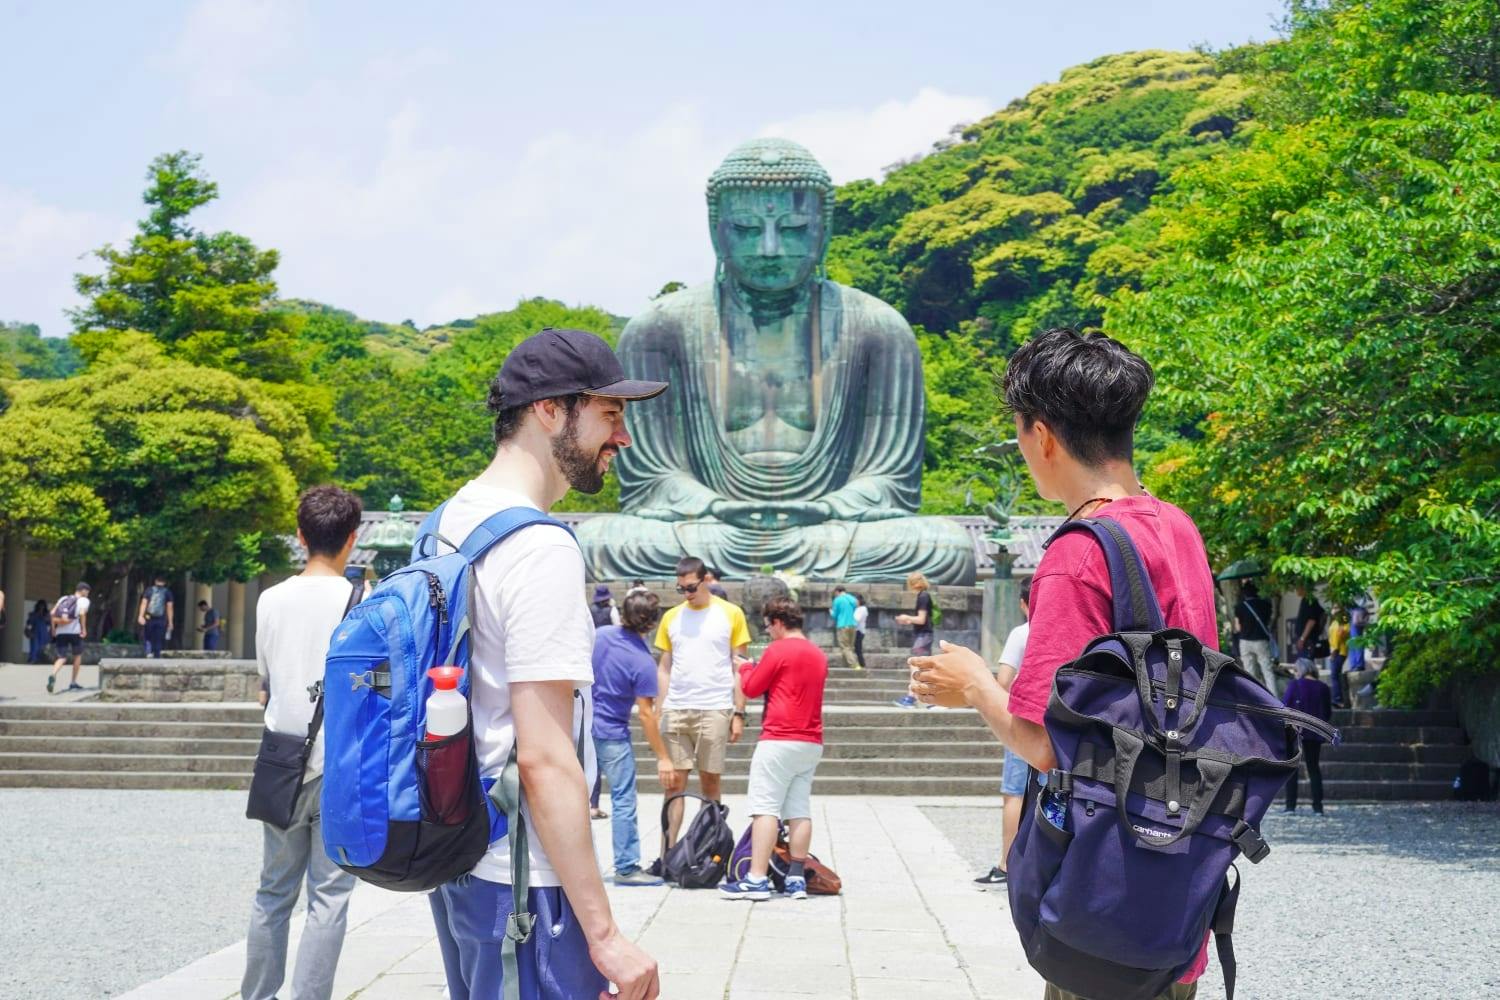 Rundgang durch die alte Hauptstadt Kamakura mit dem Großen Buddha